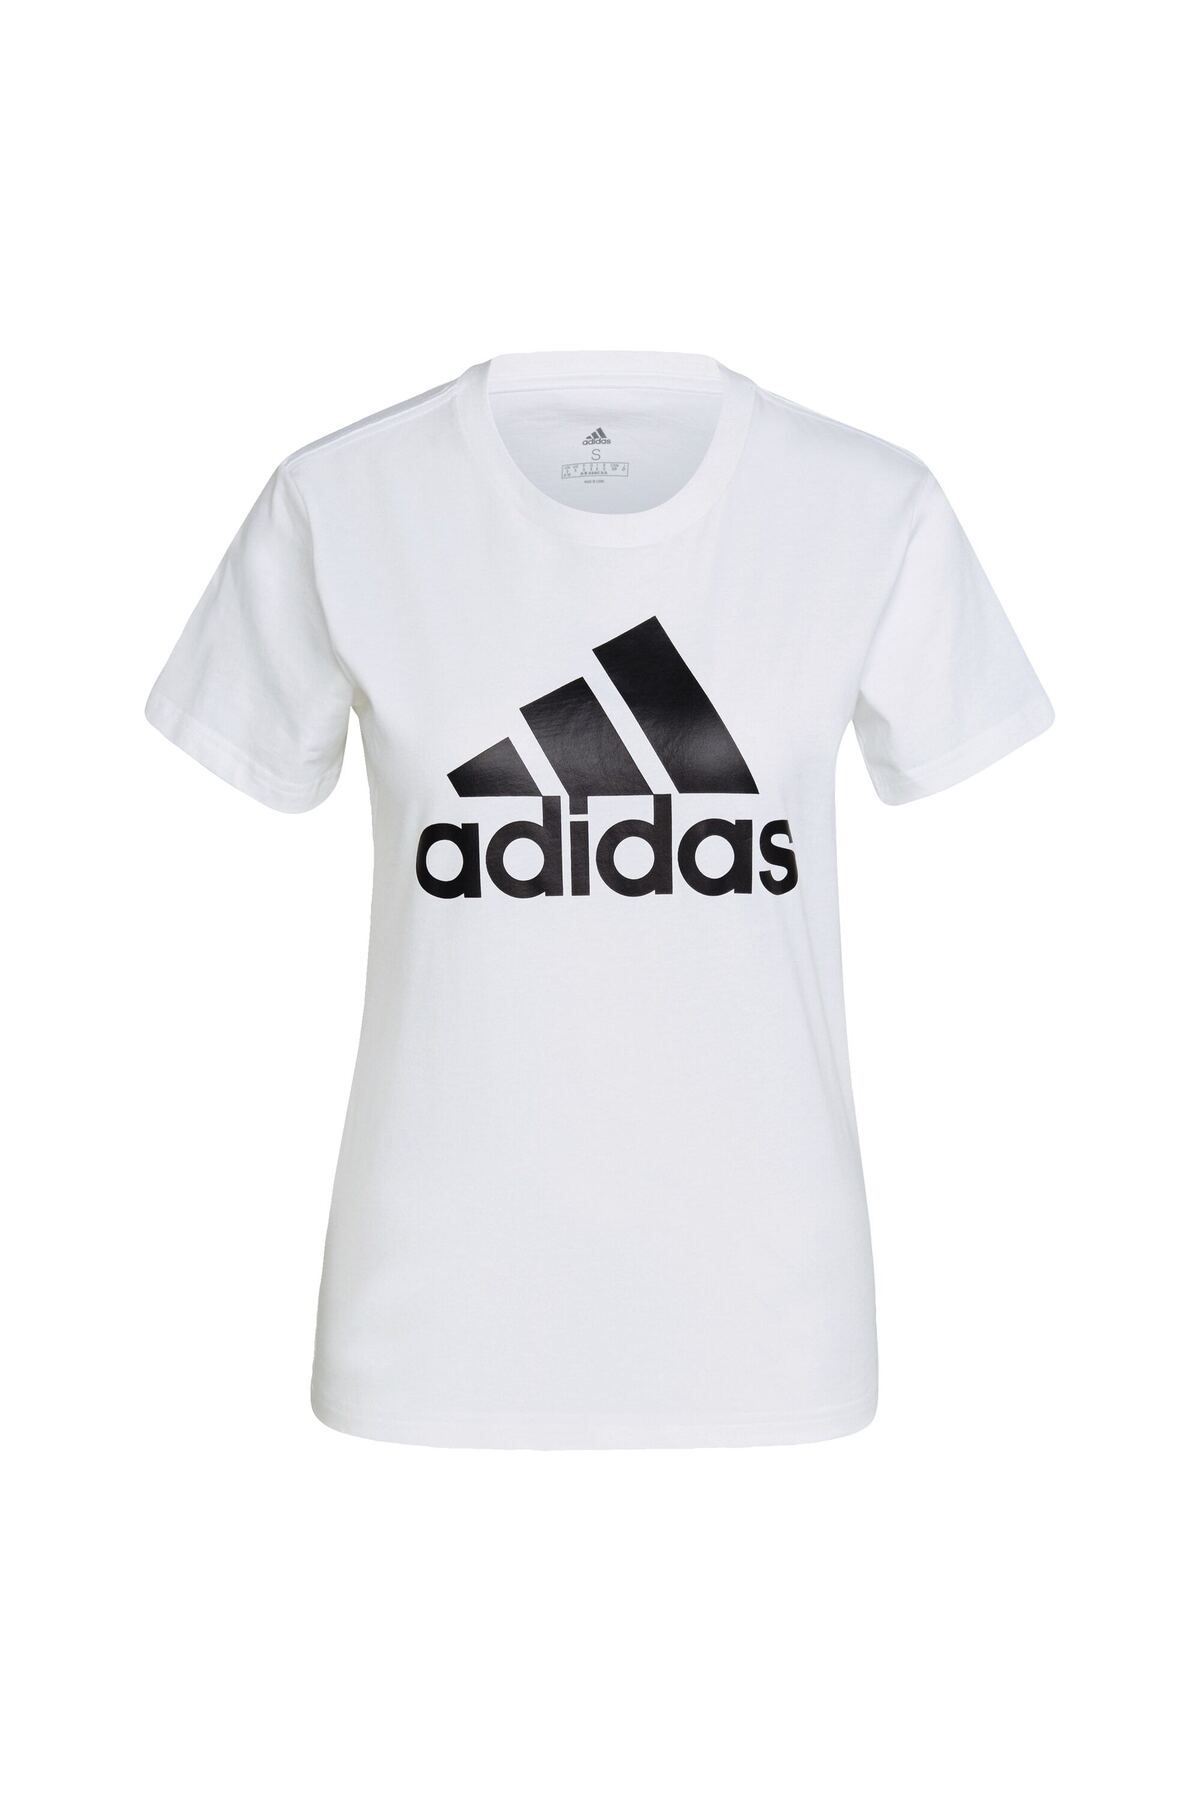 adidas adidas پیراهن تی شرت با لوگوی برجسته - مدل GL0649